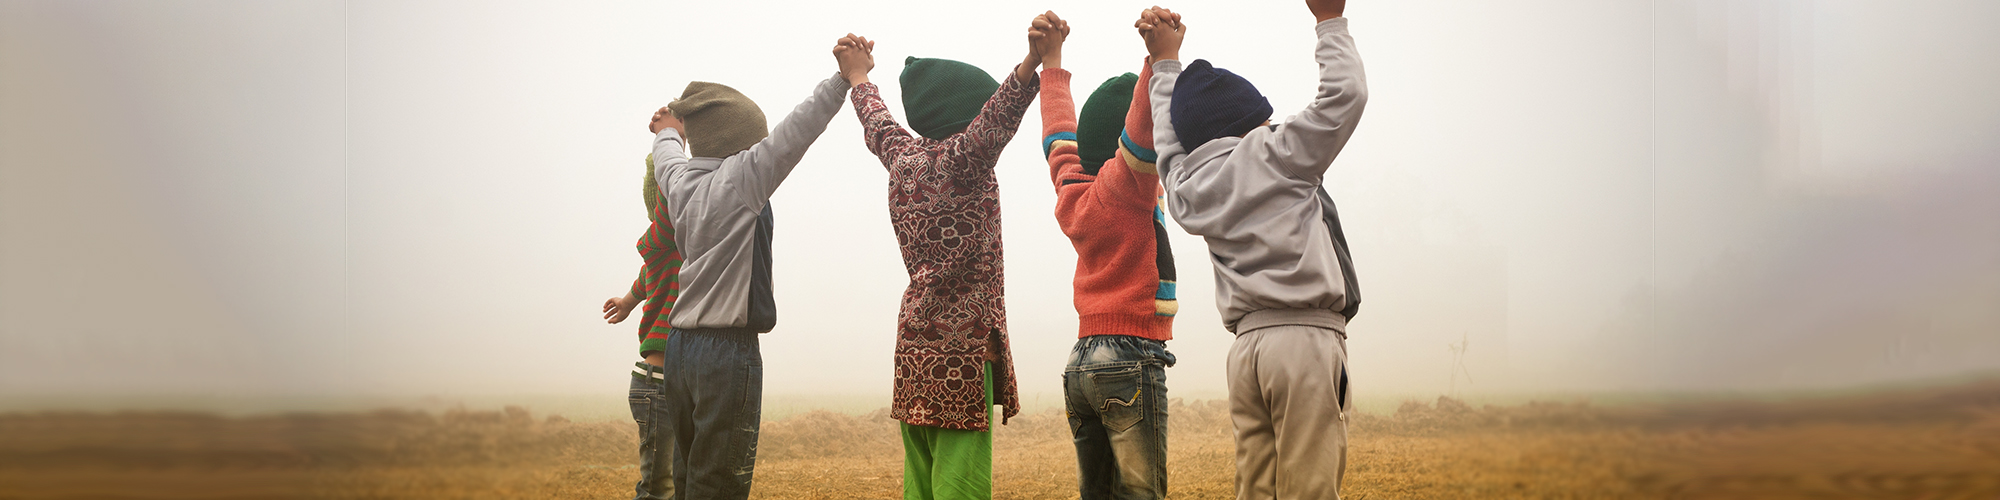 4 enfants se tiennent par la main en regardant l'horizon